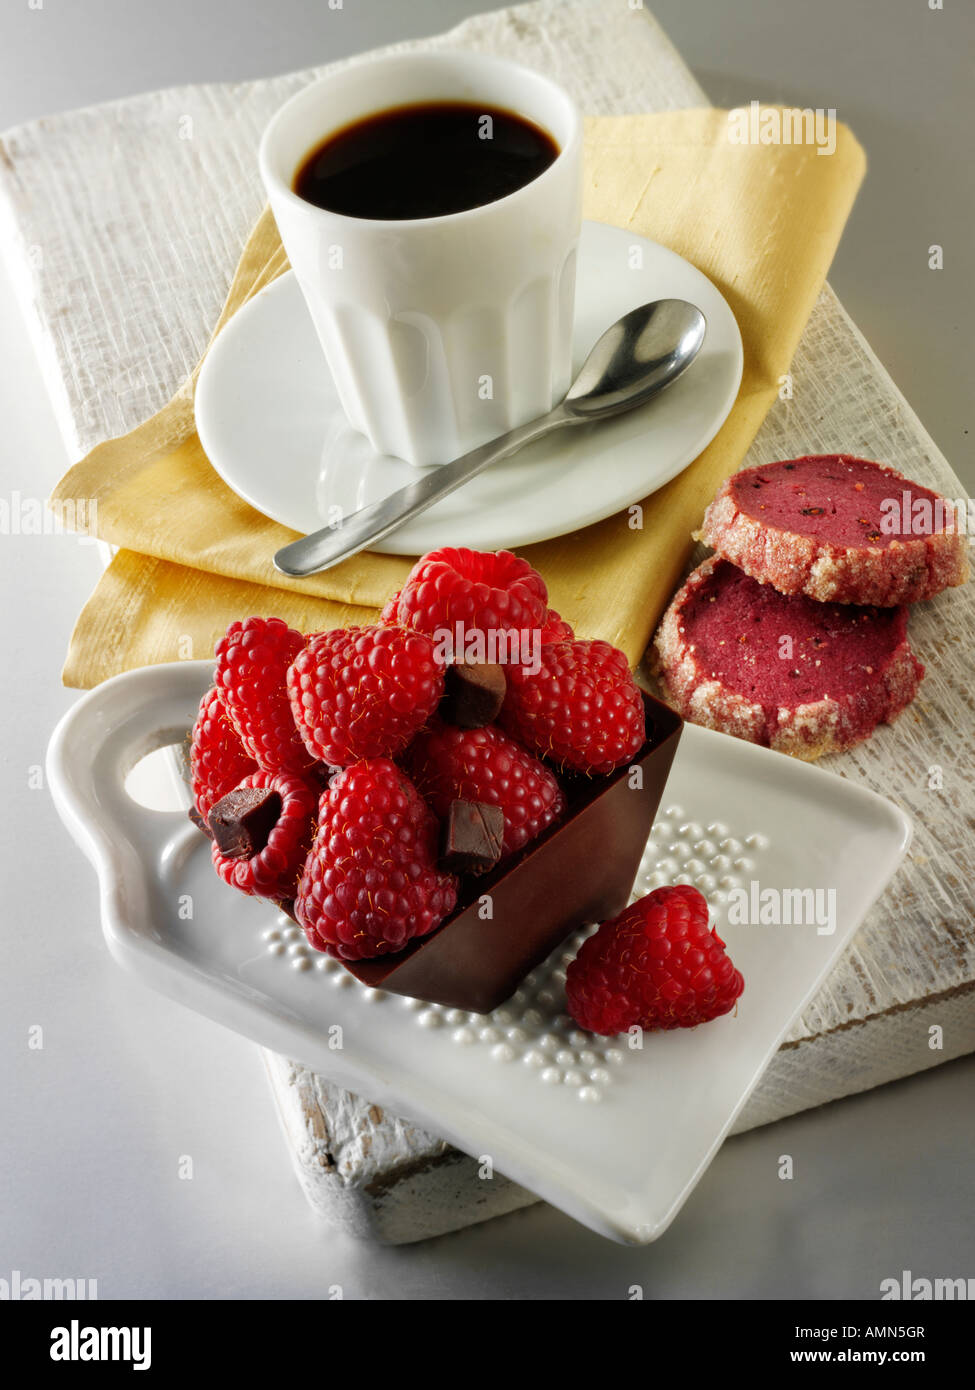 Torta al cioccolato ripieno di cioccolato e rabboccato con lamponi freschi in un cafè con caffè Foto Stock